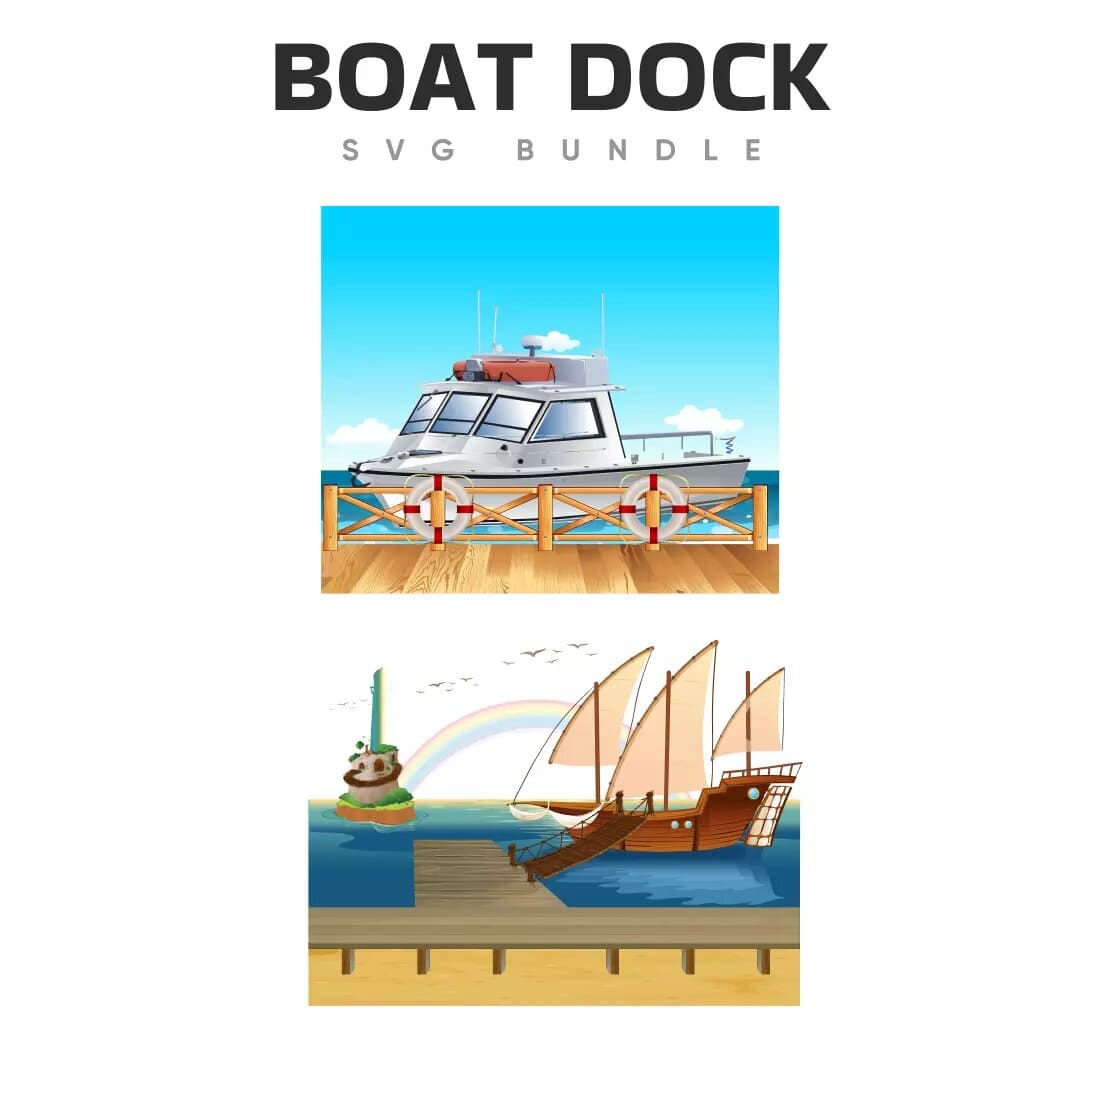 Boat Dock SVG Bundle Preview 5.